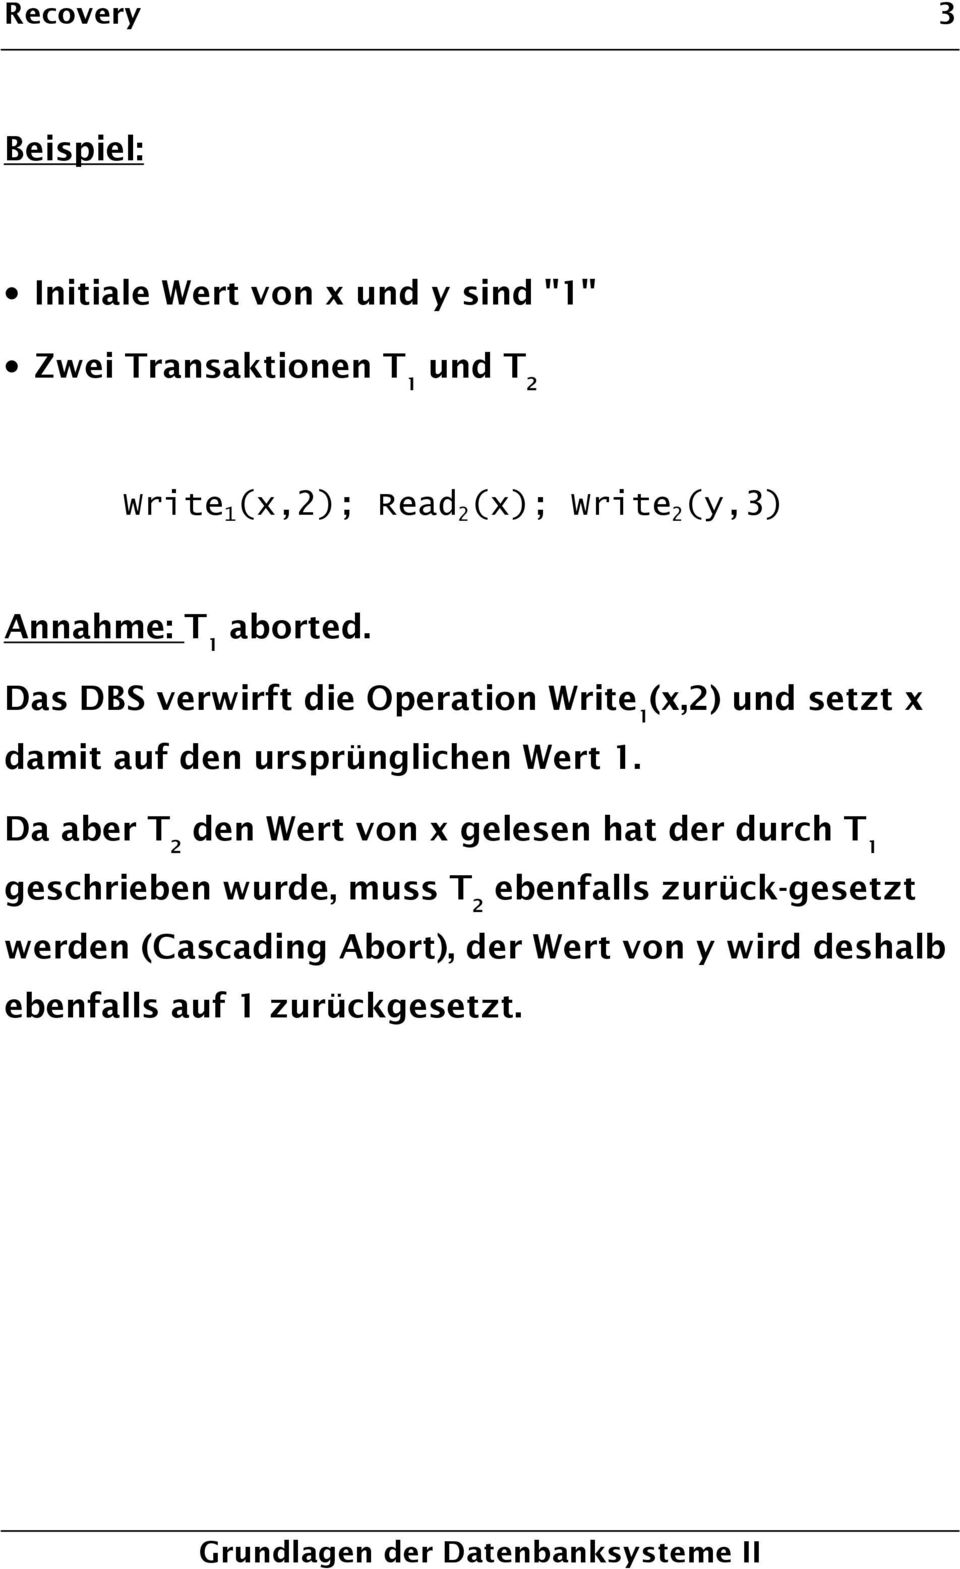 Das DBS verwirft die Operation Write 1 (x,2) und setzt x damit auf den ursprünglichen Wert 1.